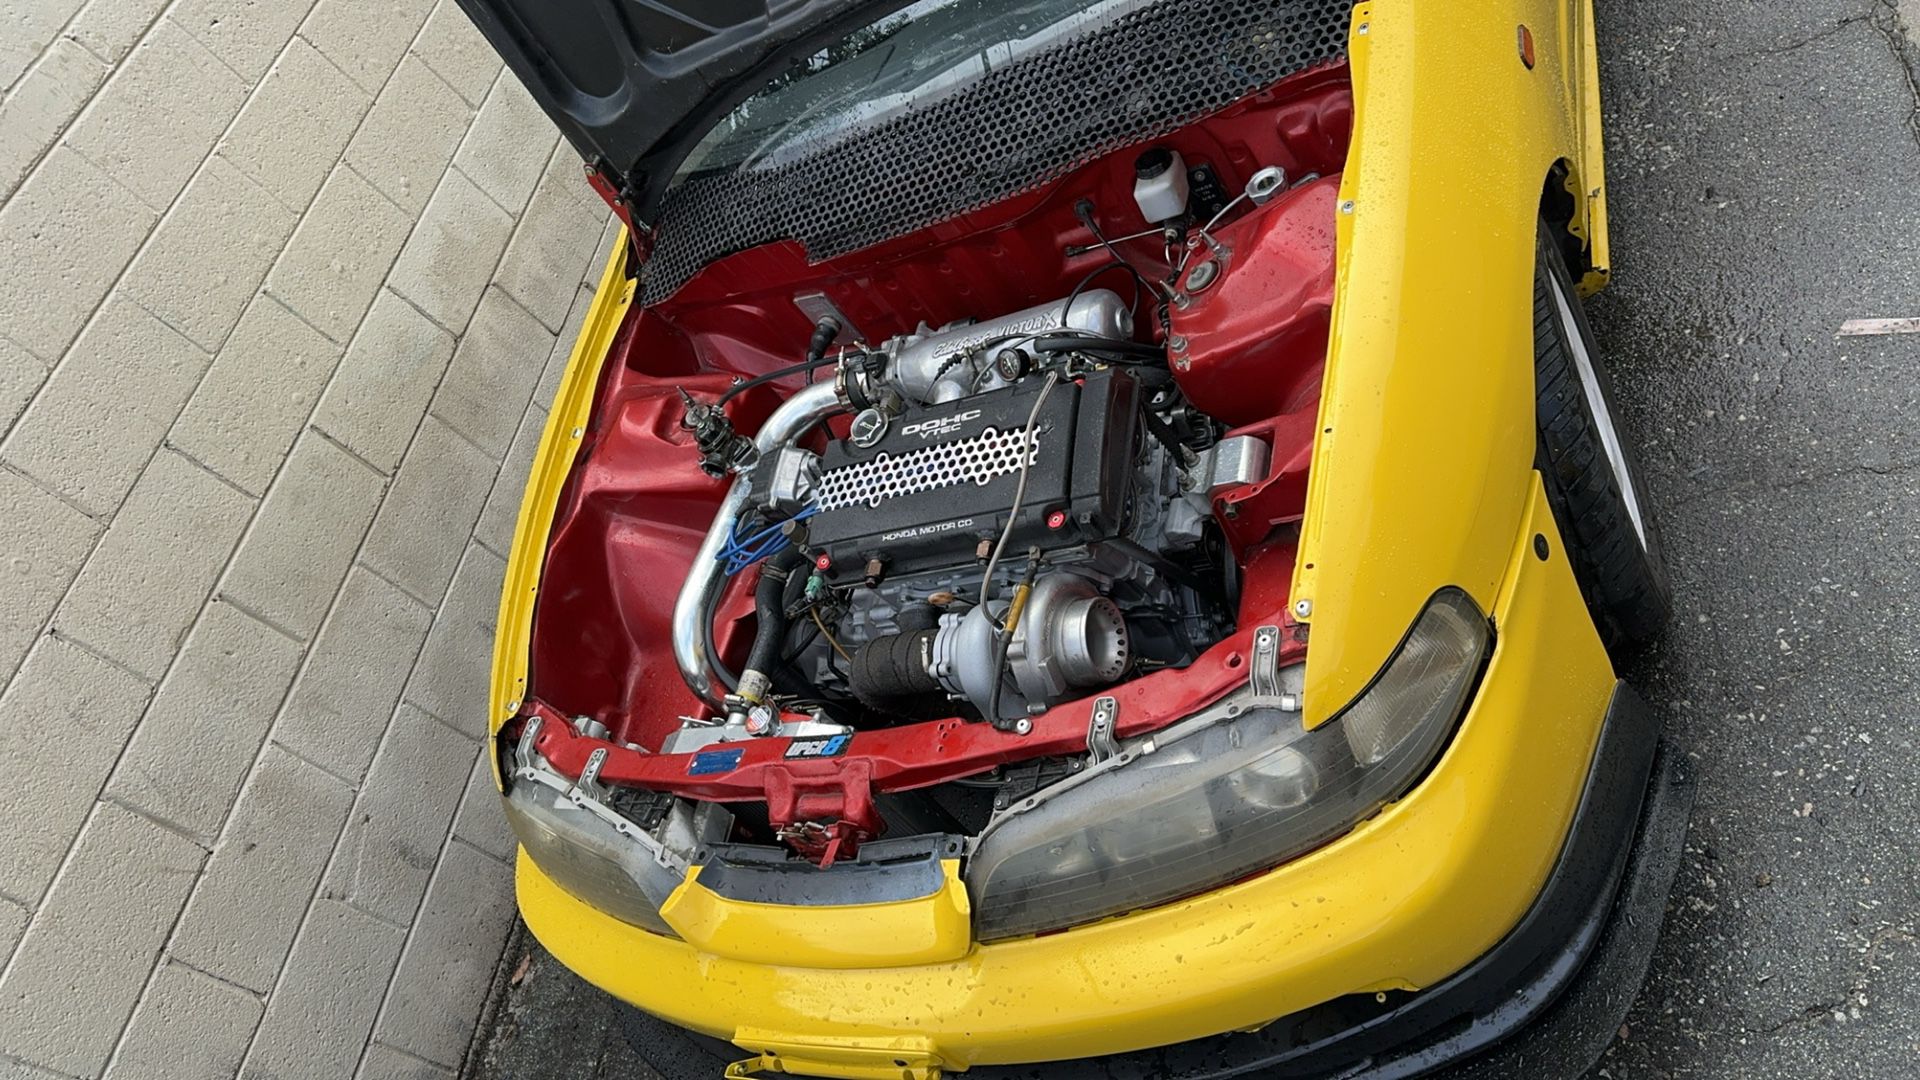 Integra Dc2 Acura Fully Build Turbo Part